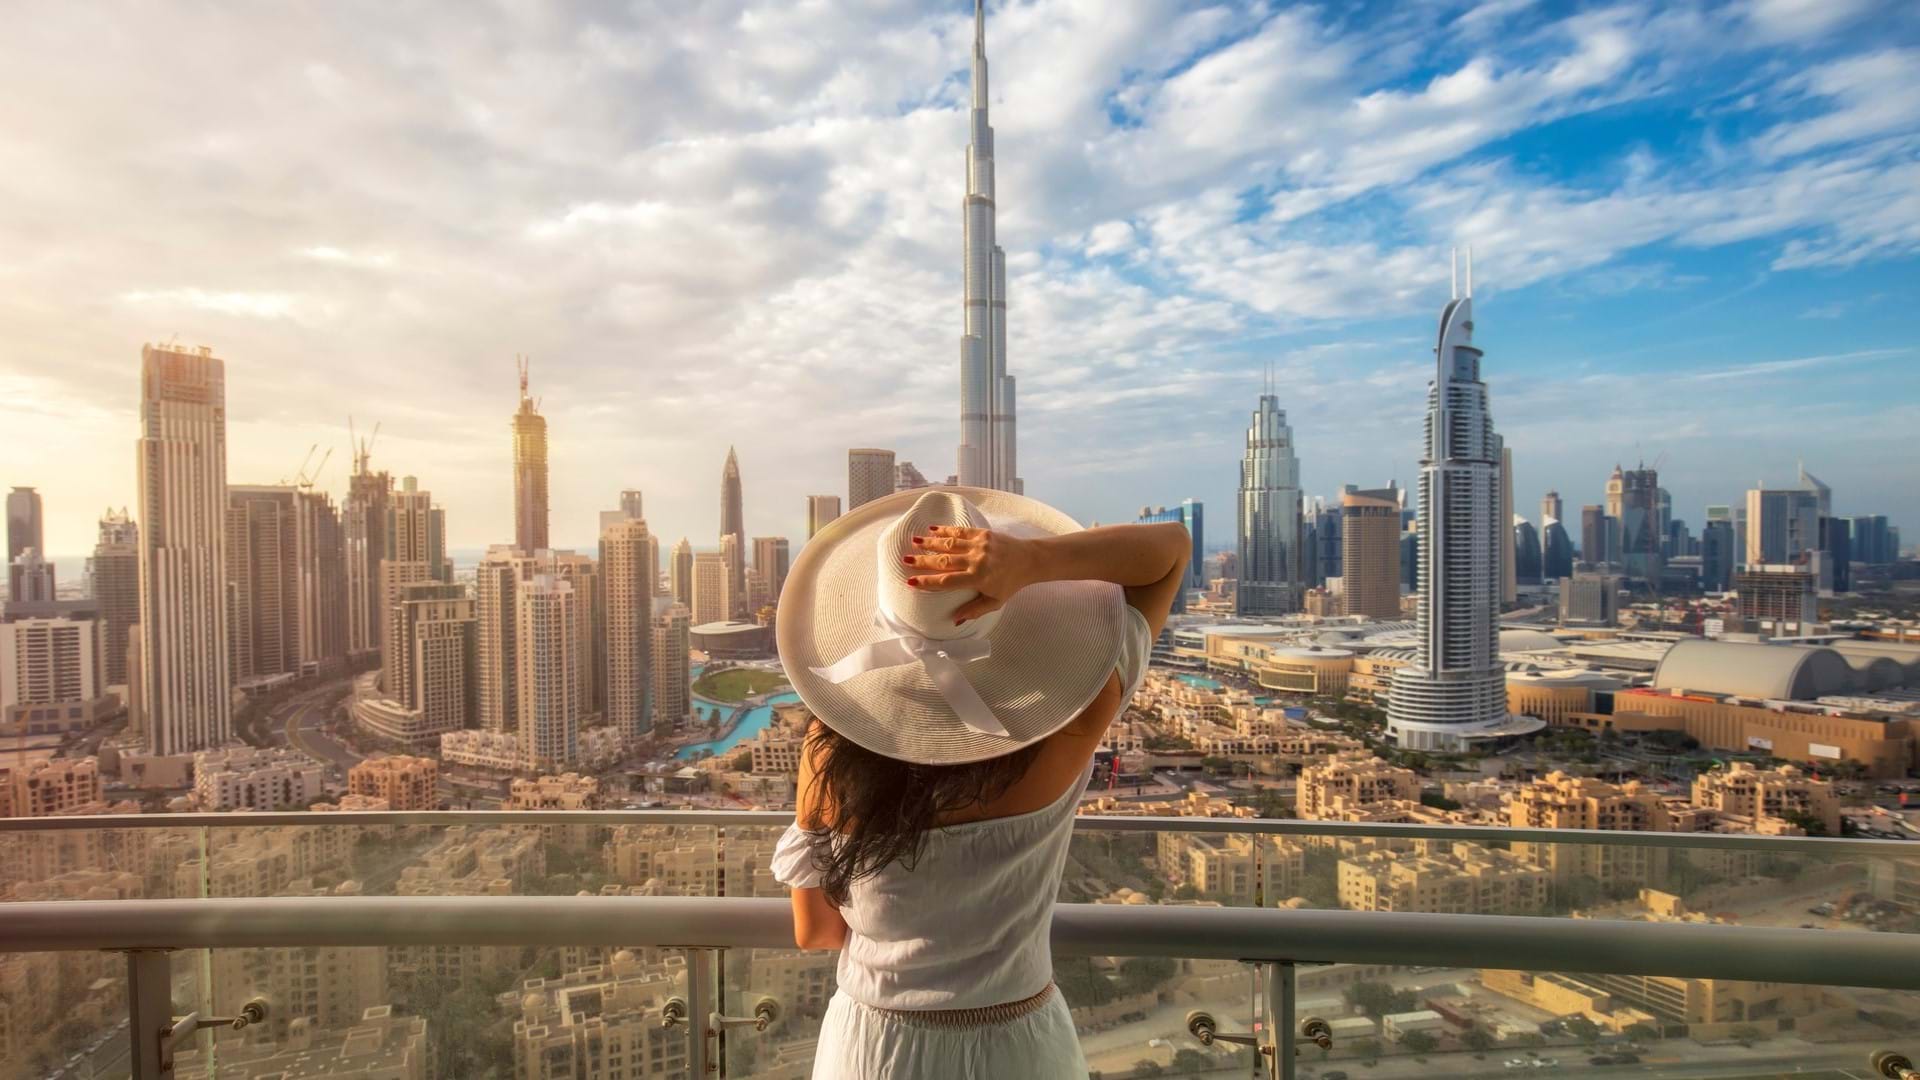 Devojka okrenuta leđima koja leda u Dubai i najveću zgradu na svetu Burj Kalifu.